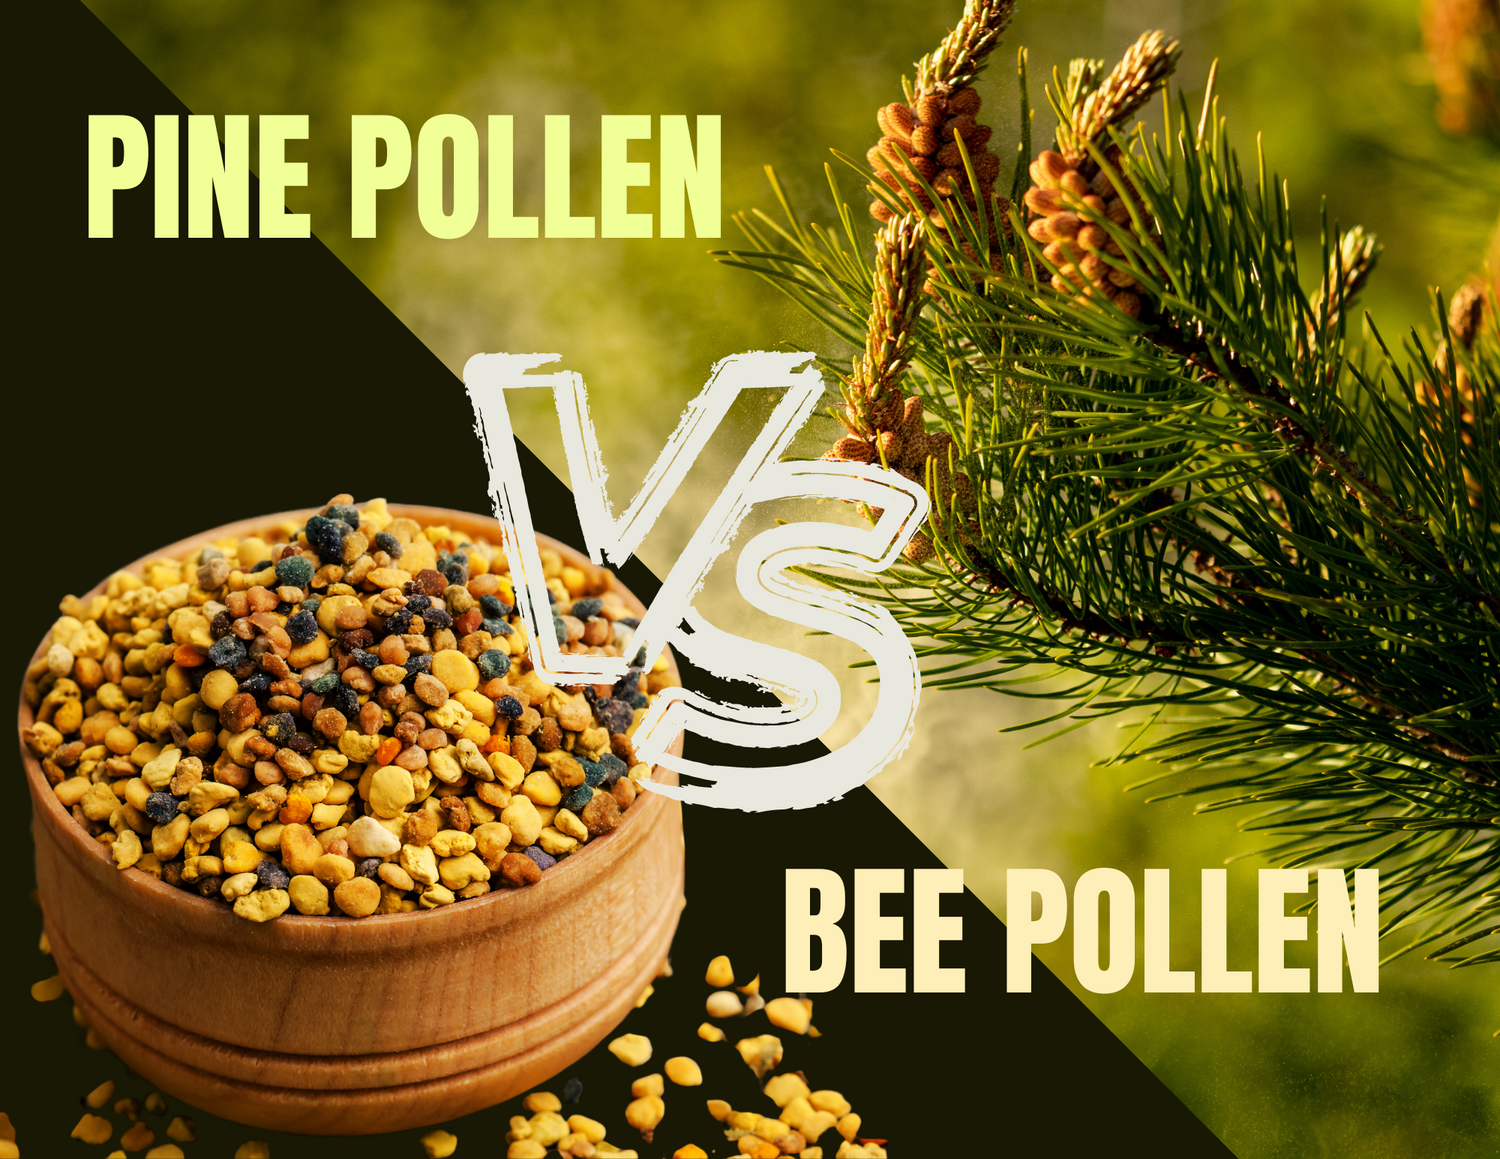 Pine pollen vs bee pollen